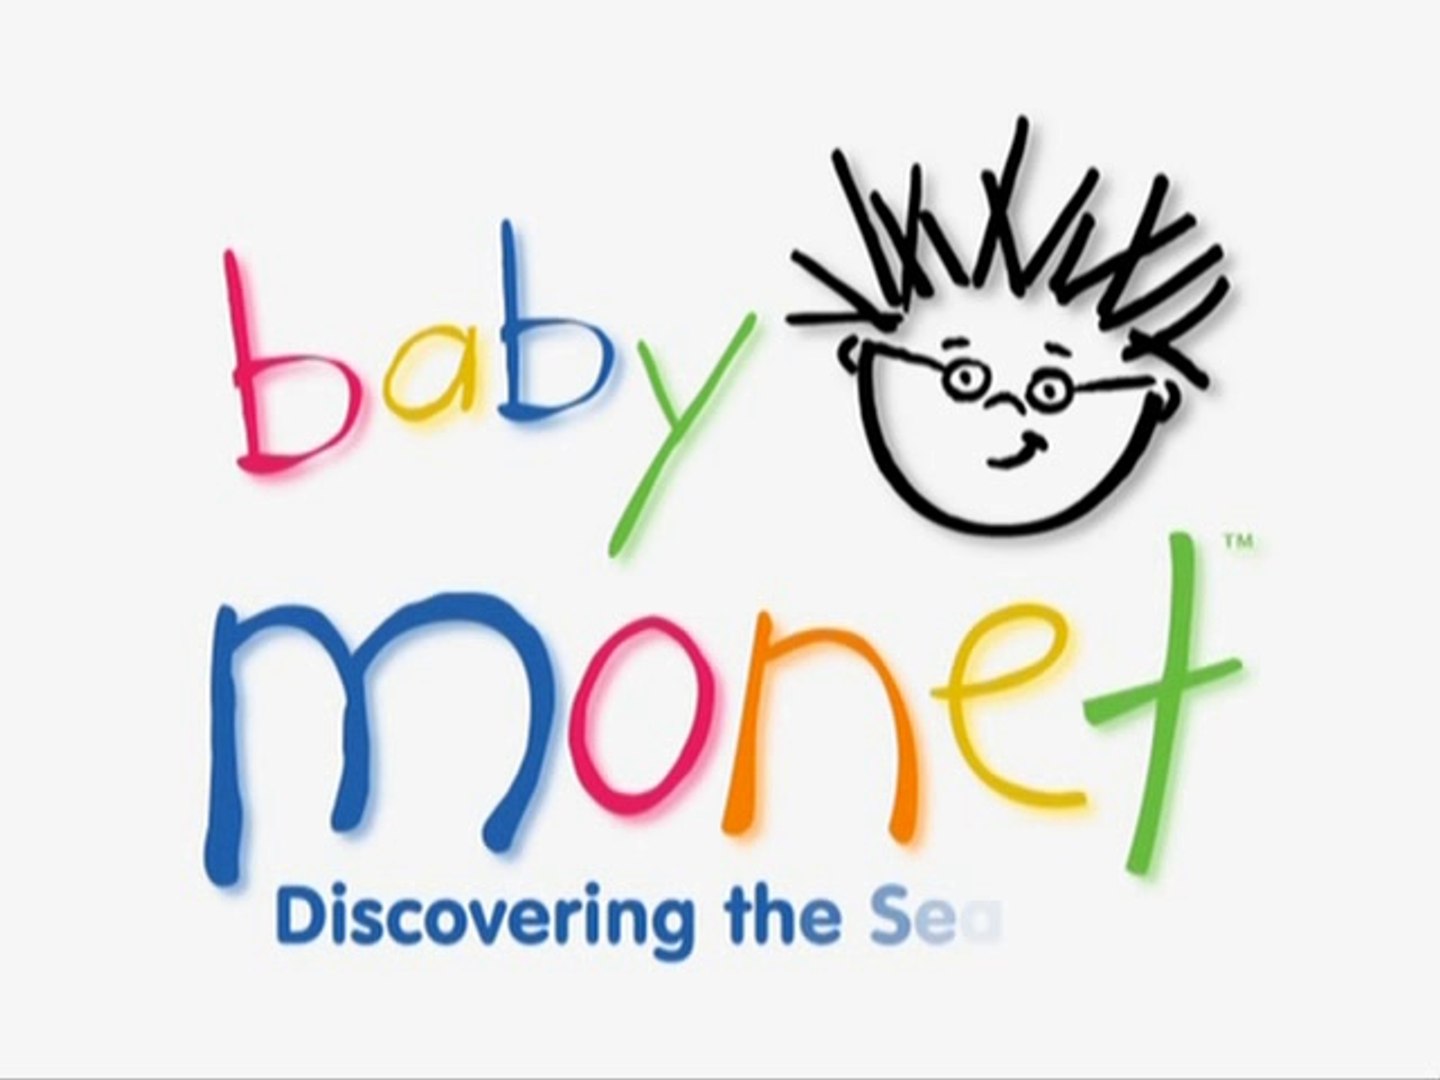 Baby Einstein - Numbers Nursery - video Dailymotion